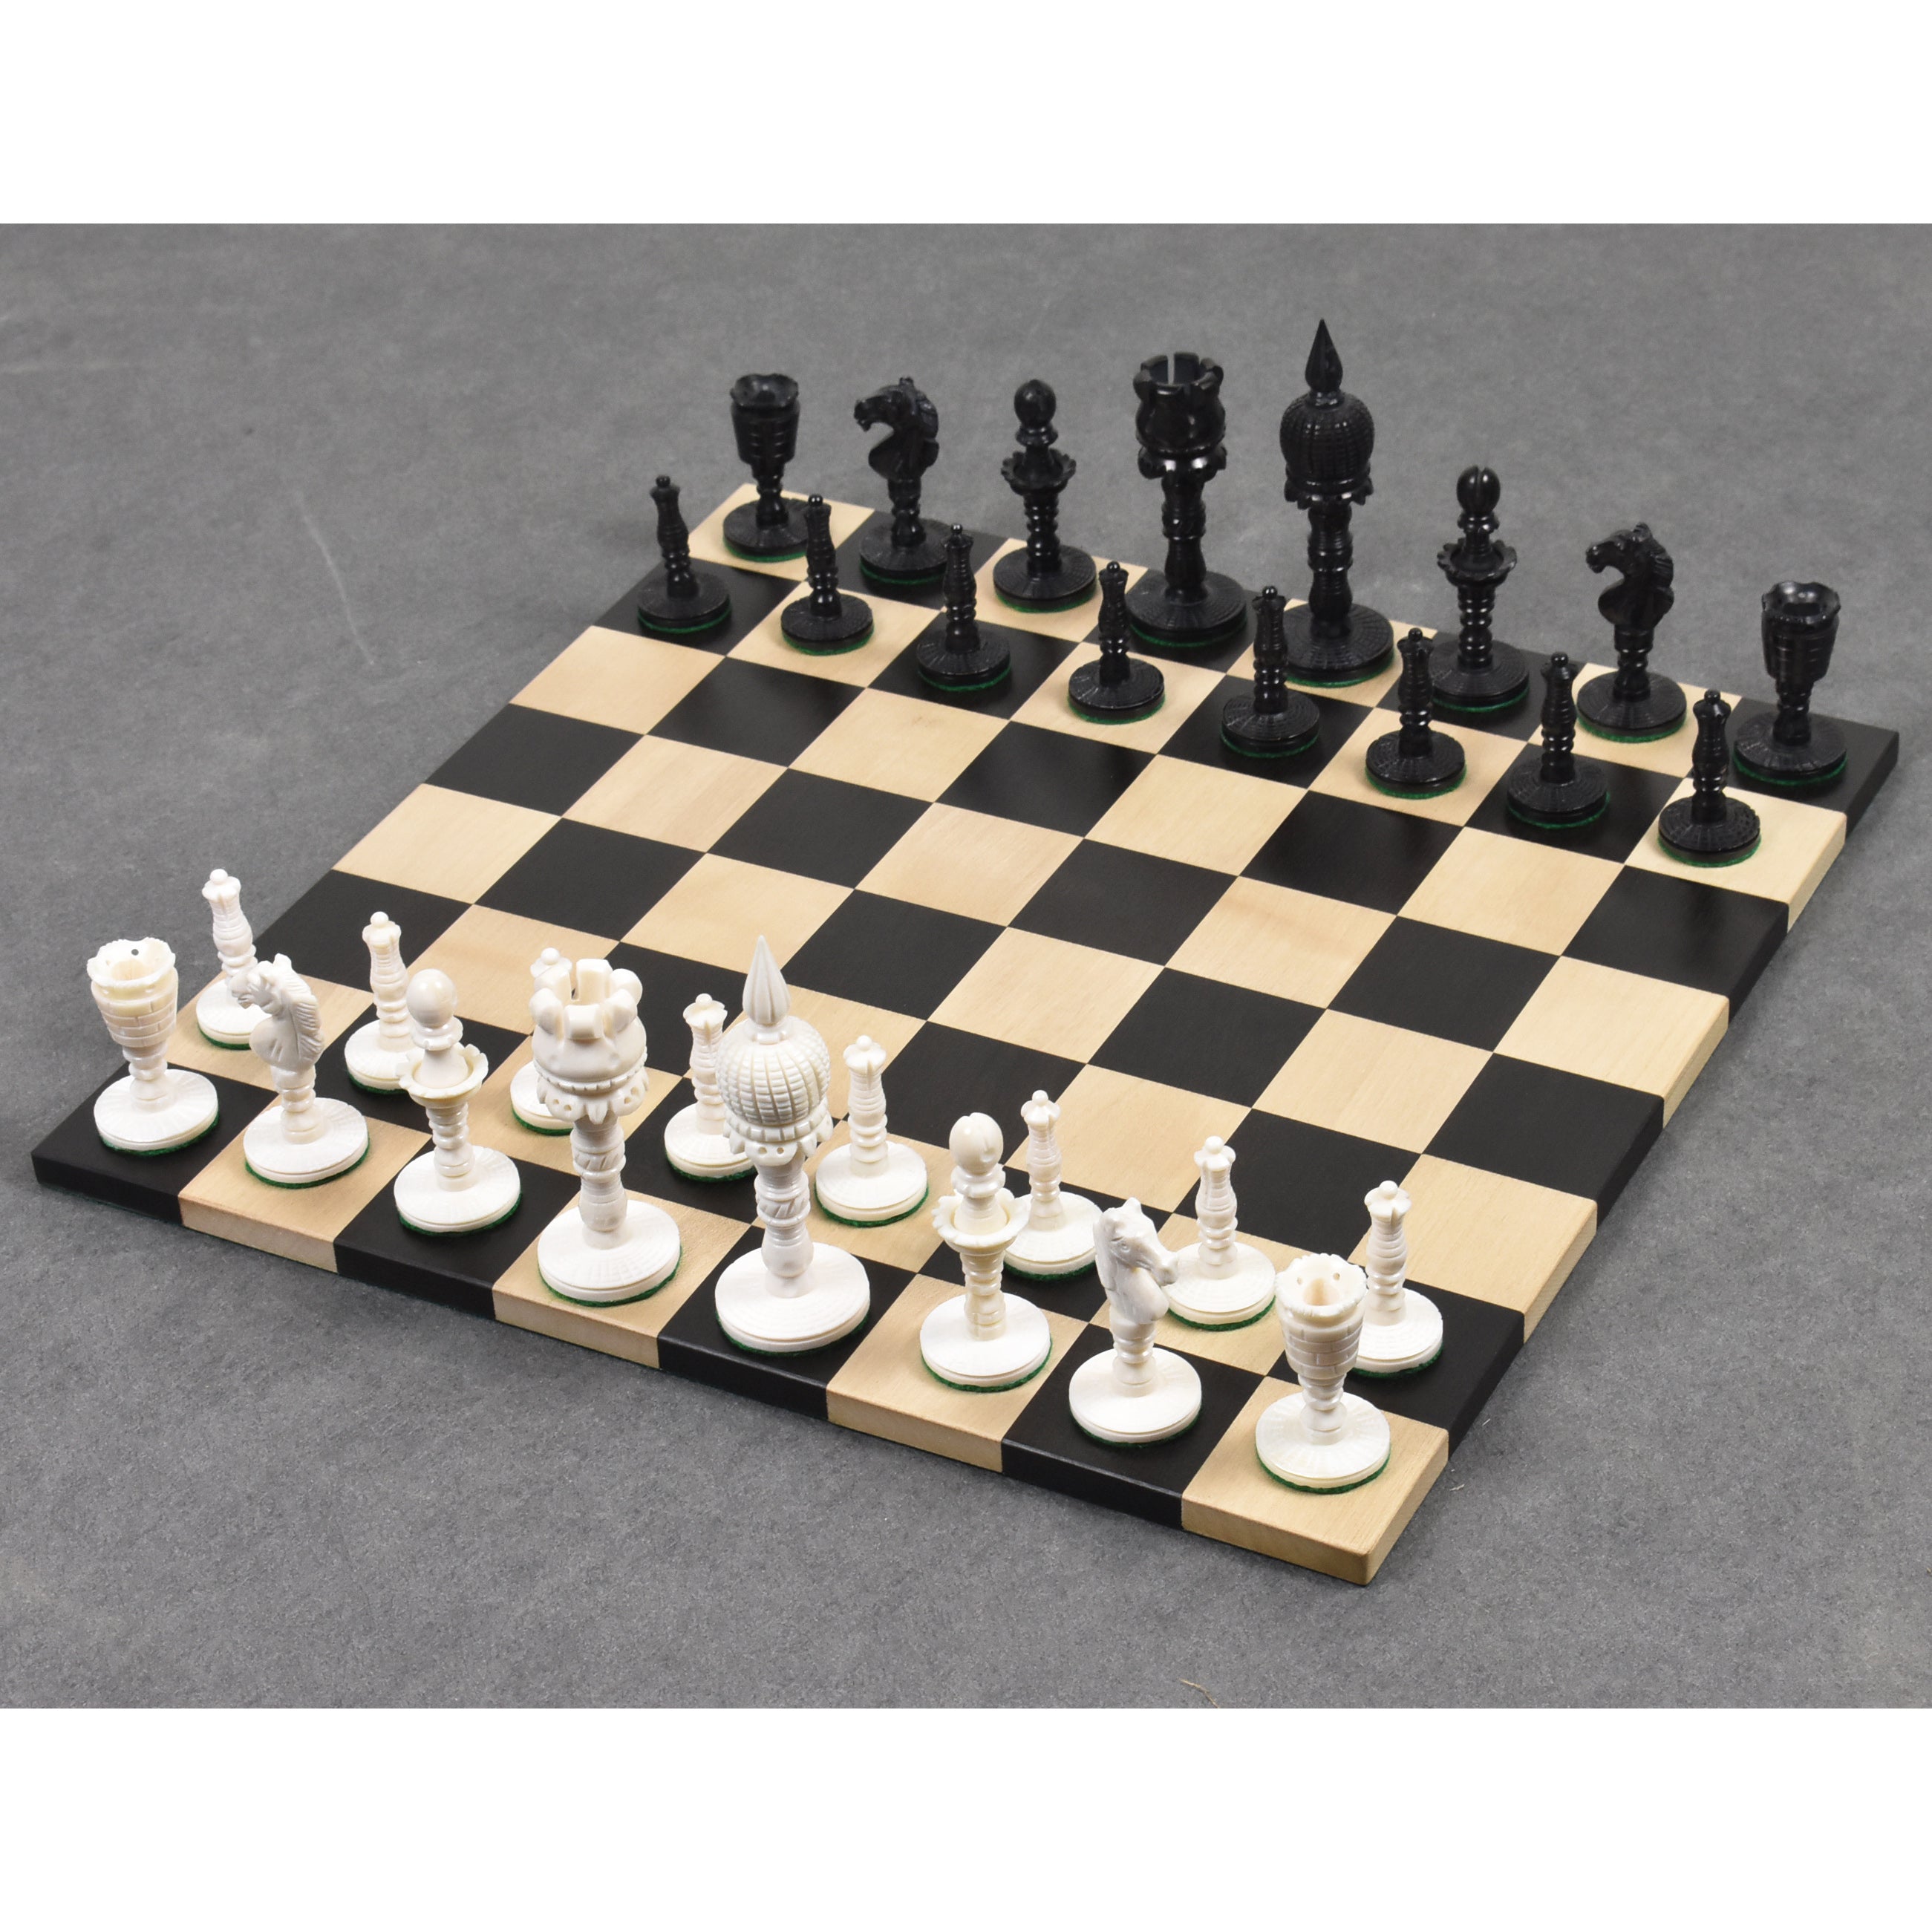  English Series Pre Staunton Chess Pieces Only Set